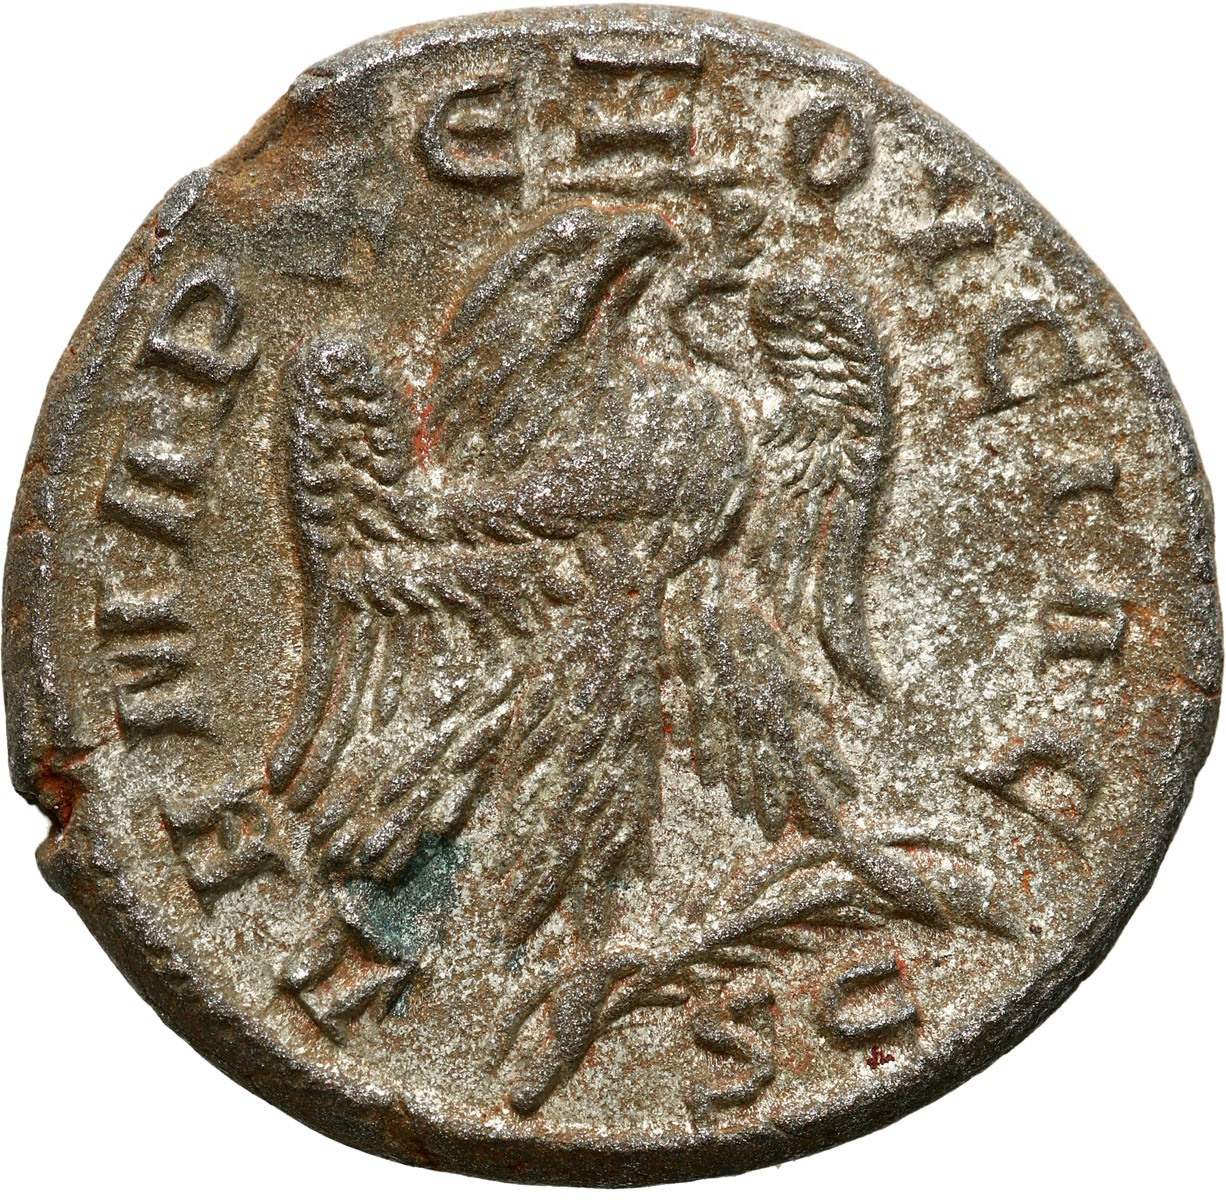 Prowincje Rzymskie - Syria, Tetradrachma, Trajan Decjusz 249 - 251 r. n. e., Antiochia